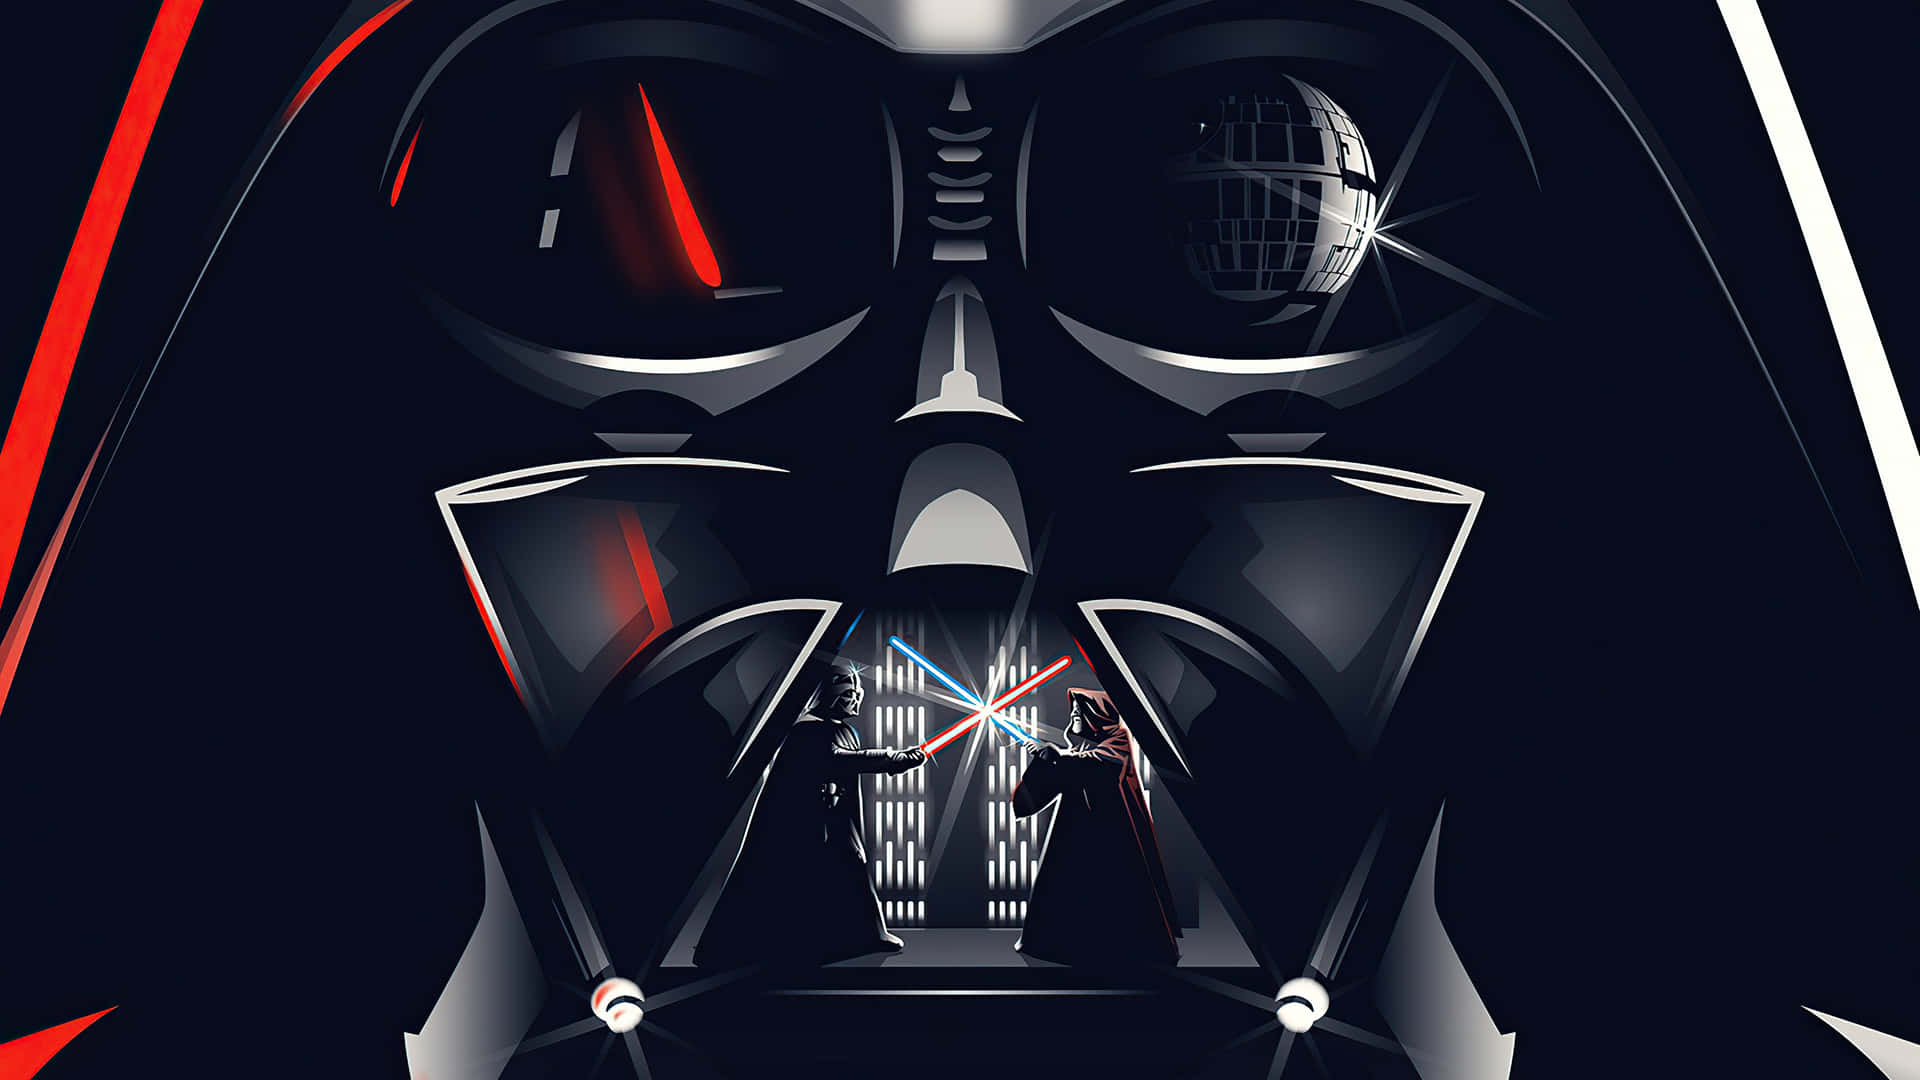 Darth Vader Ultra Wide Artwork Wallpaper